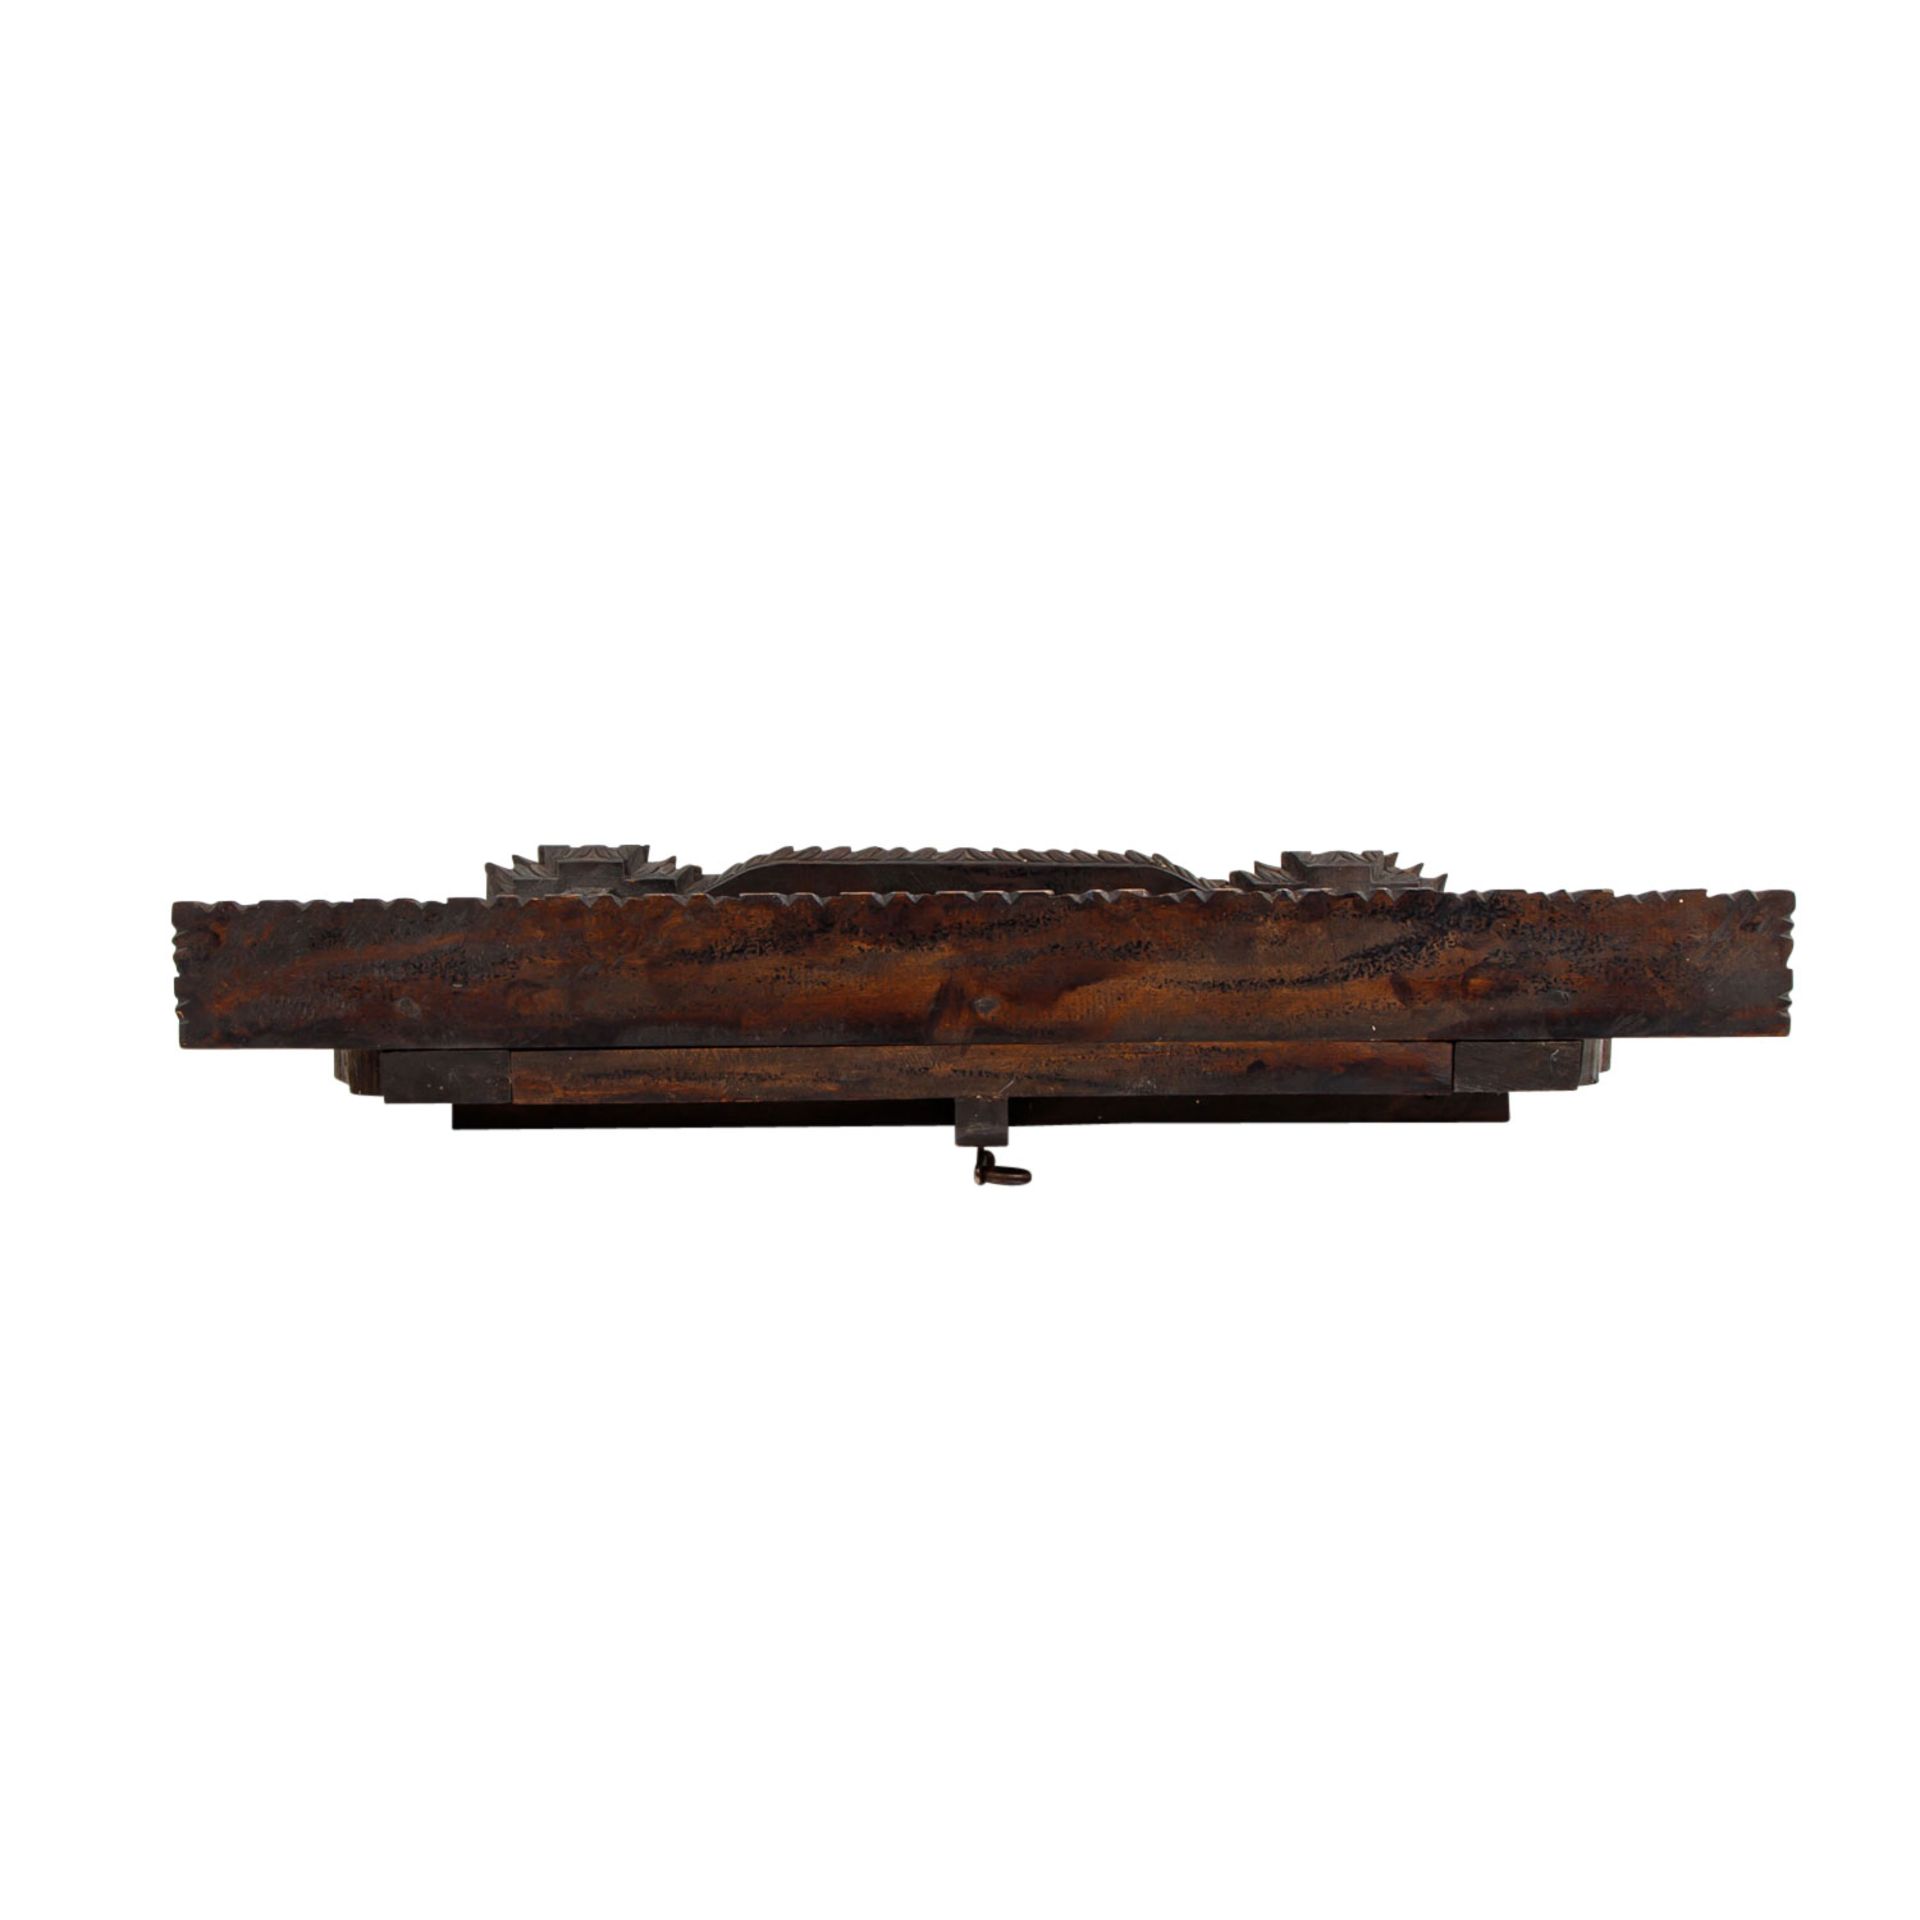 Rahmen mit Flügeltür, reich beschnitzt, aus Holz. NEPAL, um 1960, - Image 7 of 8